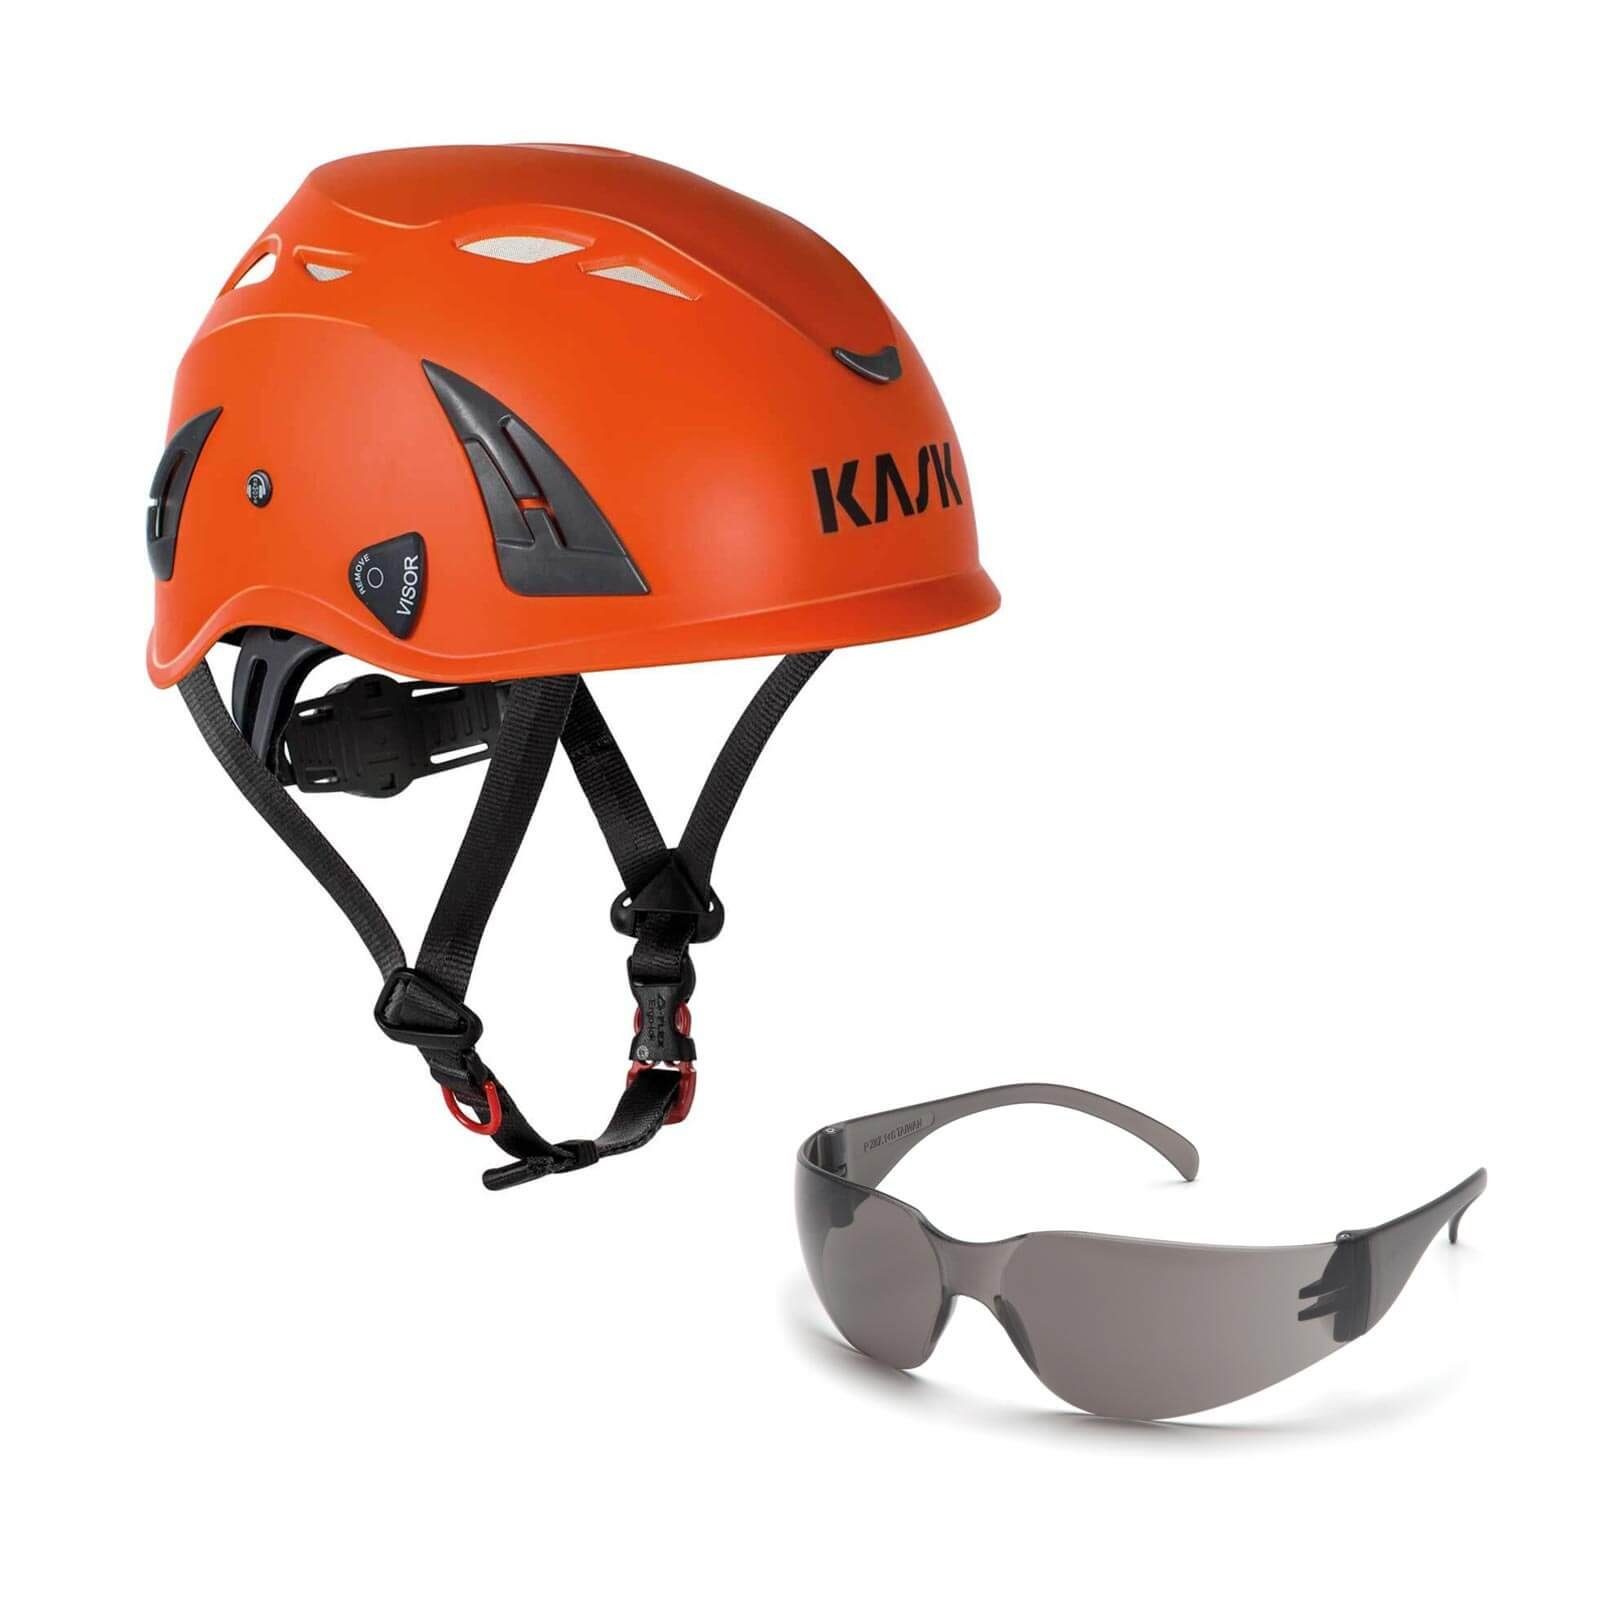 Kask Schutzhelm Bergsteigerhelm, + klar Schutzbrille orange AQ Industriekletterhelm Plasma